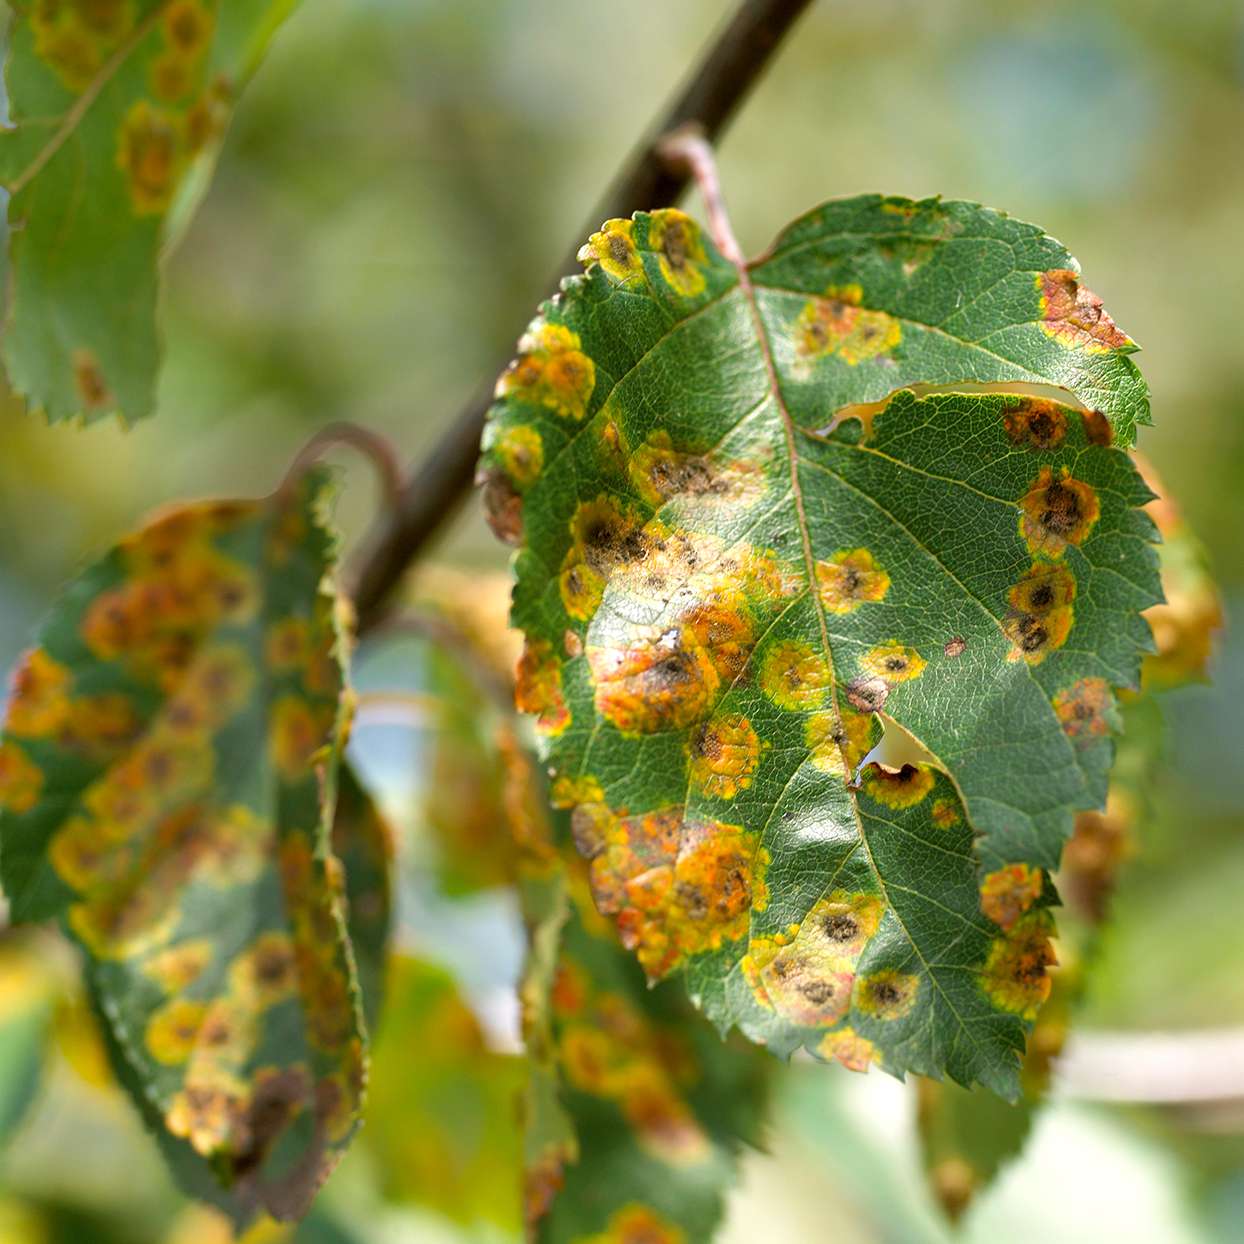 Diseases of fruit tree leaves